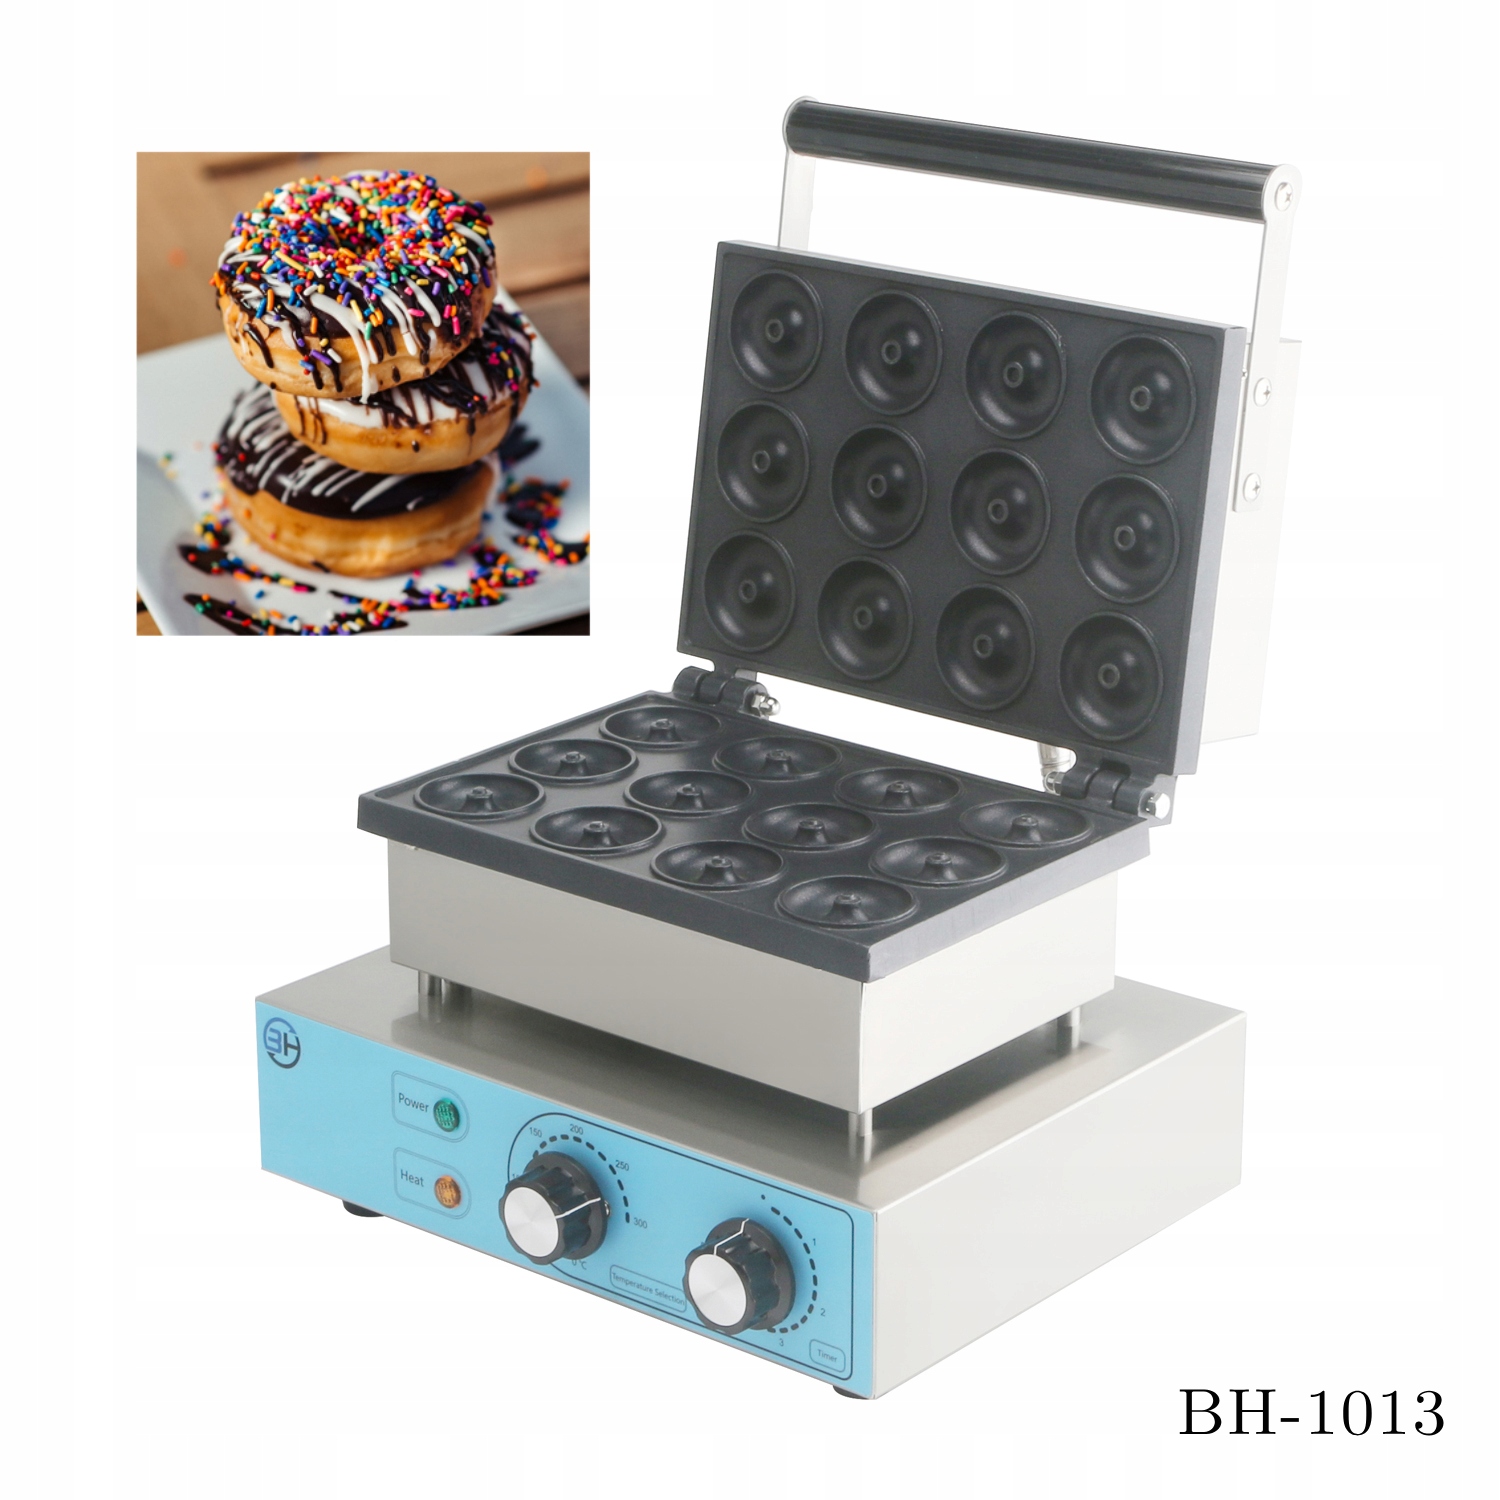 Mini pączki/gofry donut maszyna profesjonalna gastronomia 1550 W CUKUS